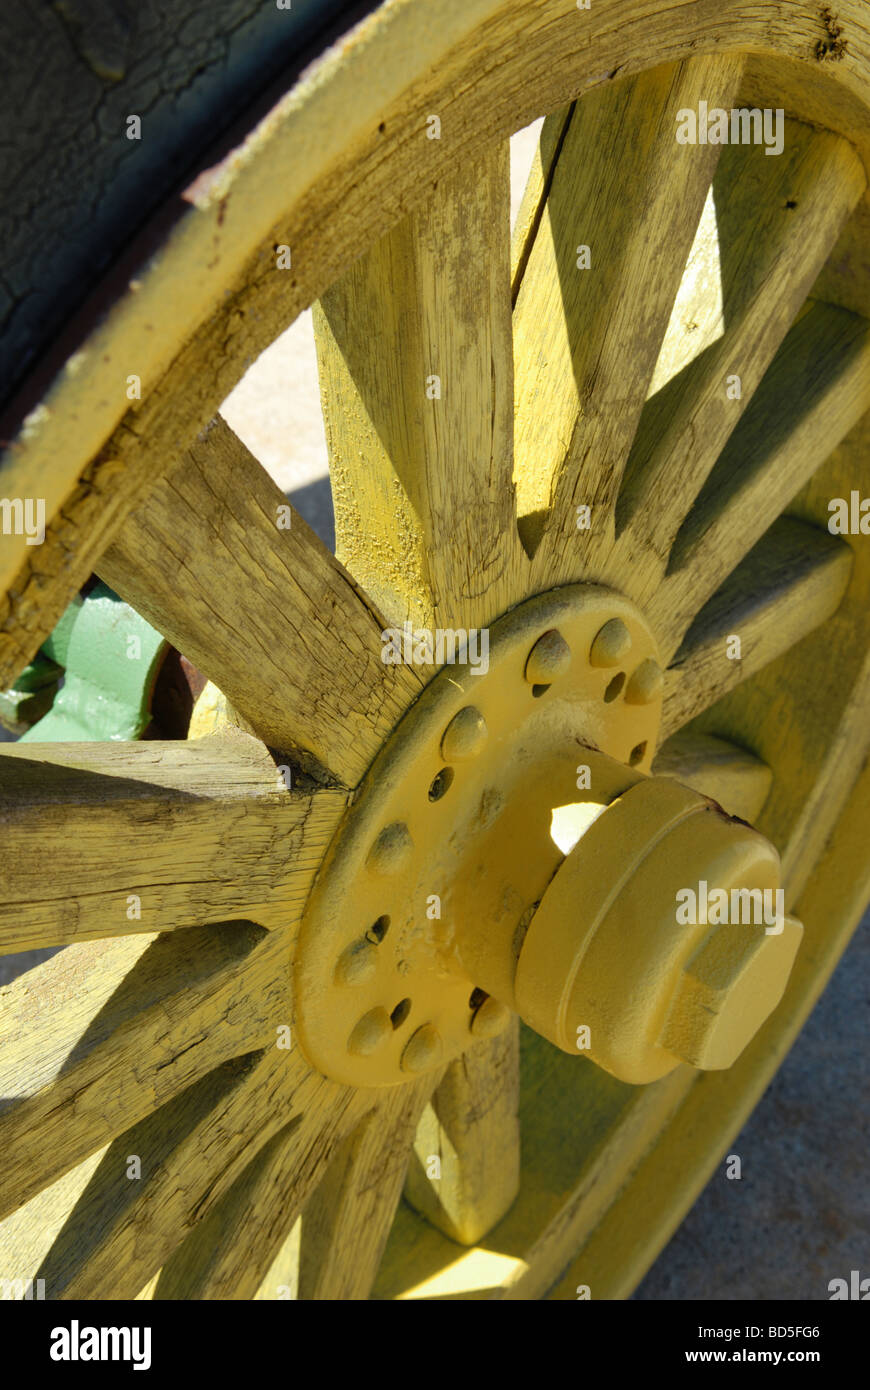 Une antique en bois du tracteur et le moyeu de roue à rayons est peint d'un jaune vif Banque D'Images